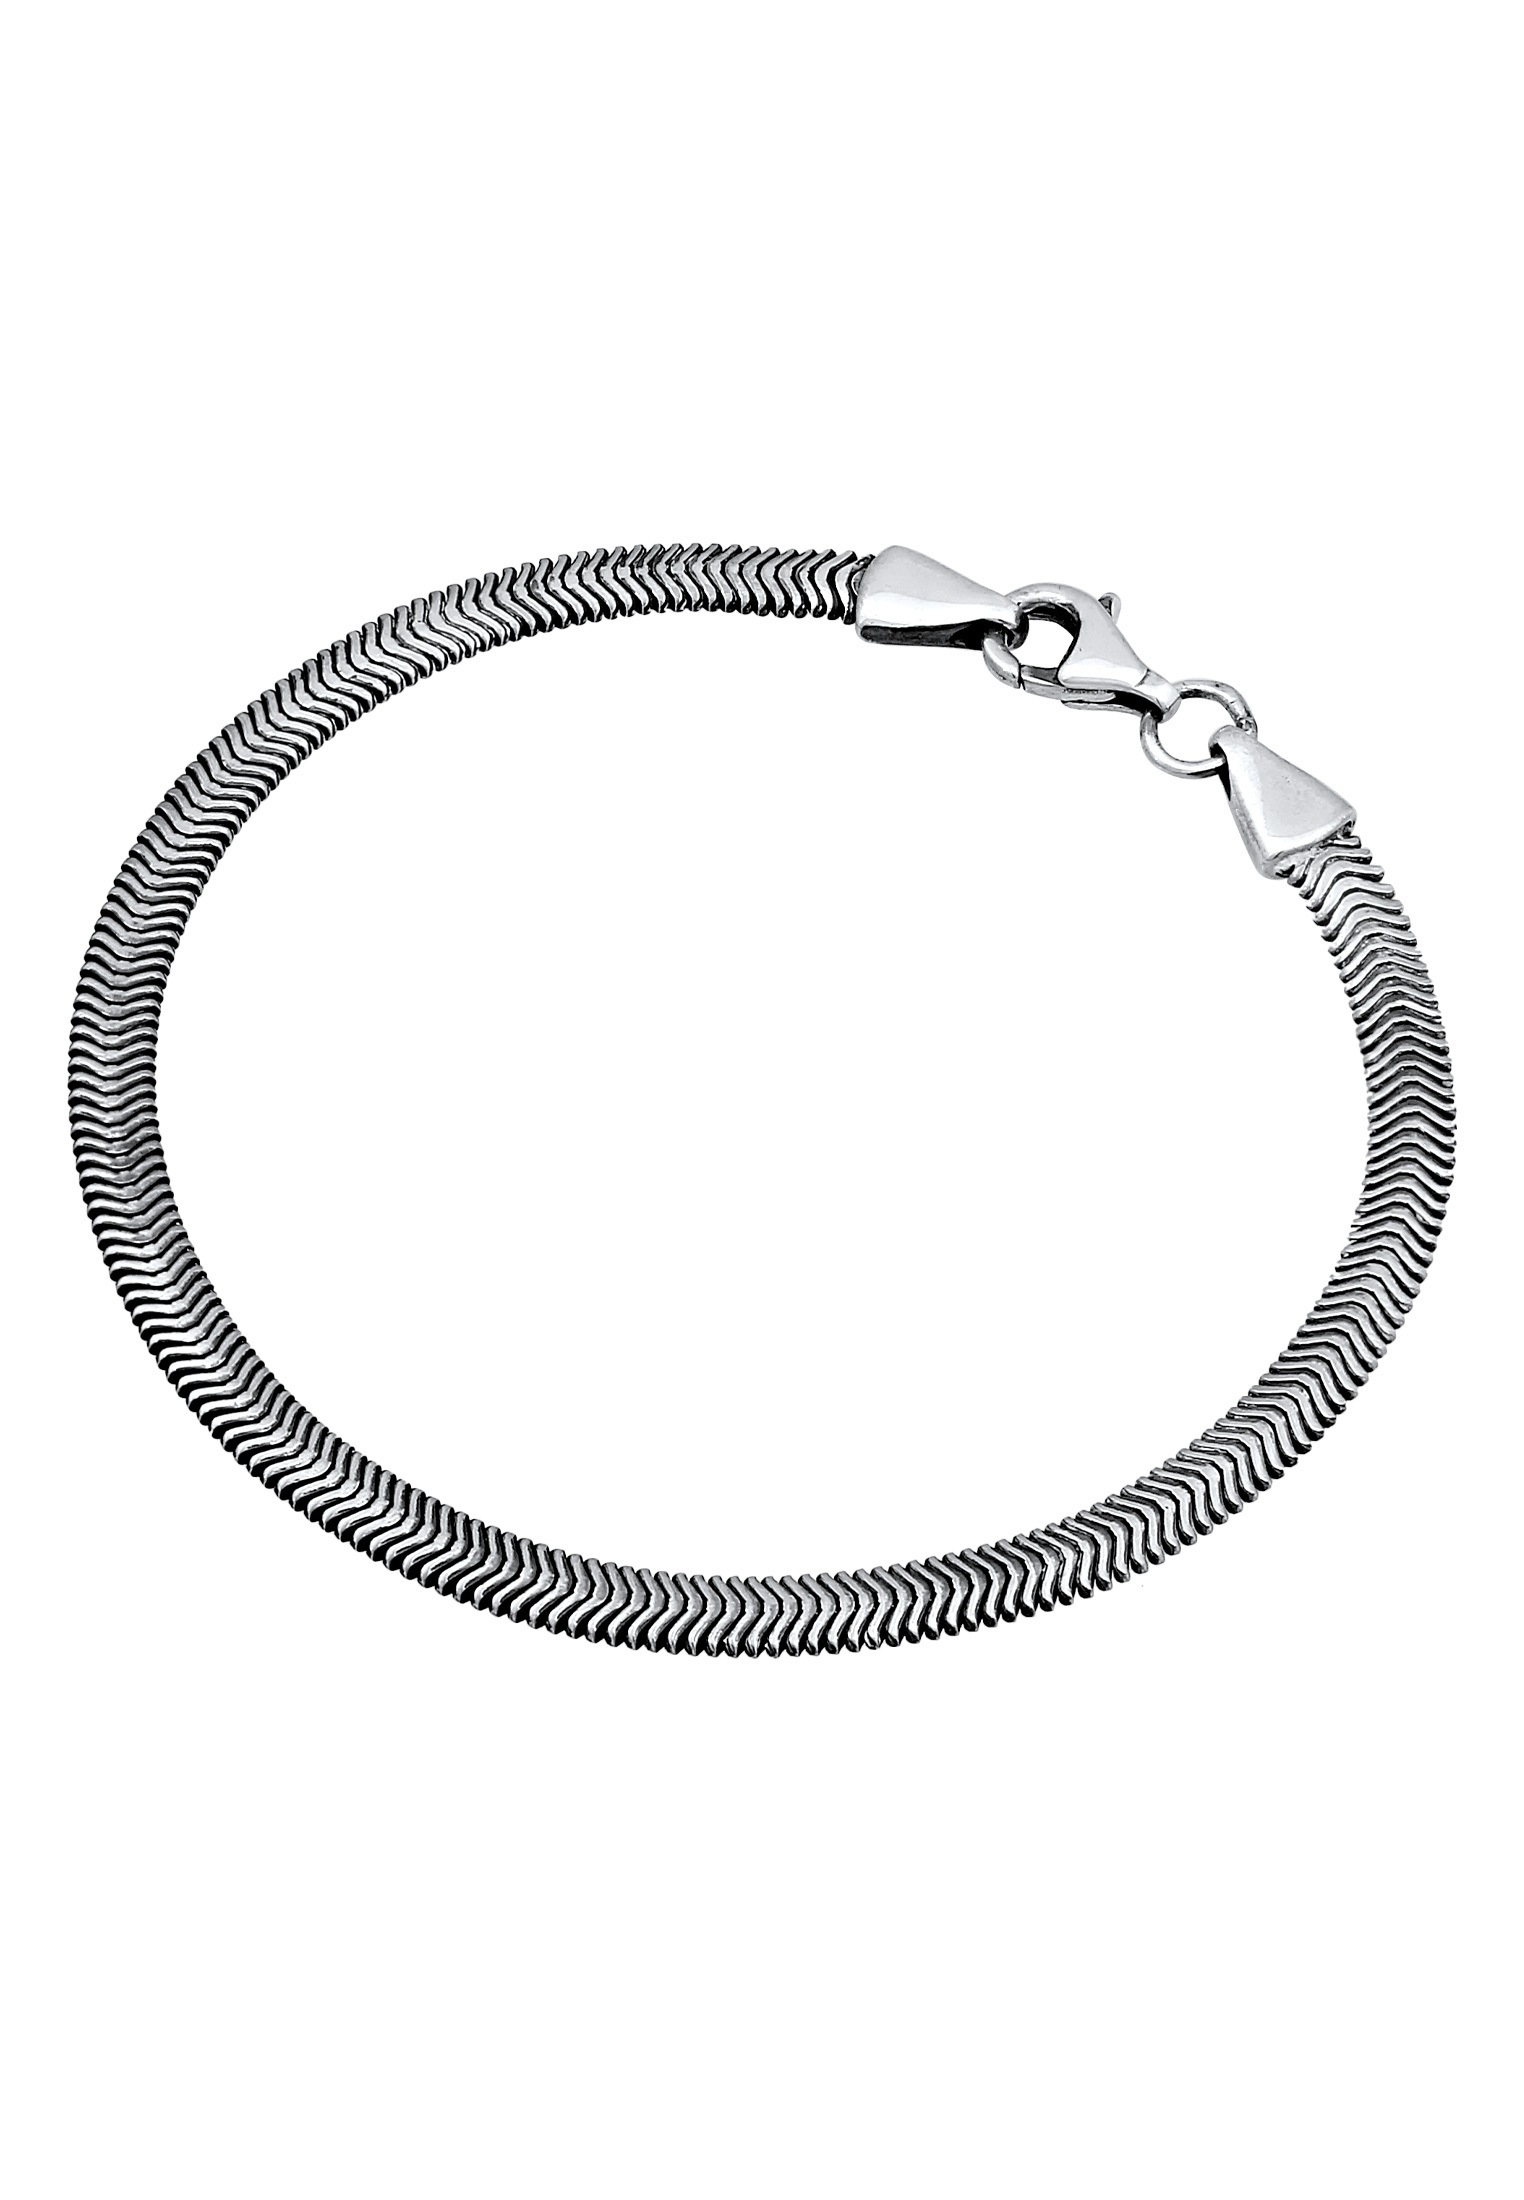 Silber« Armband Schlangenkette Fischgräte Kuzzoi kaufen »Flach Elegant 925